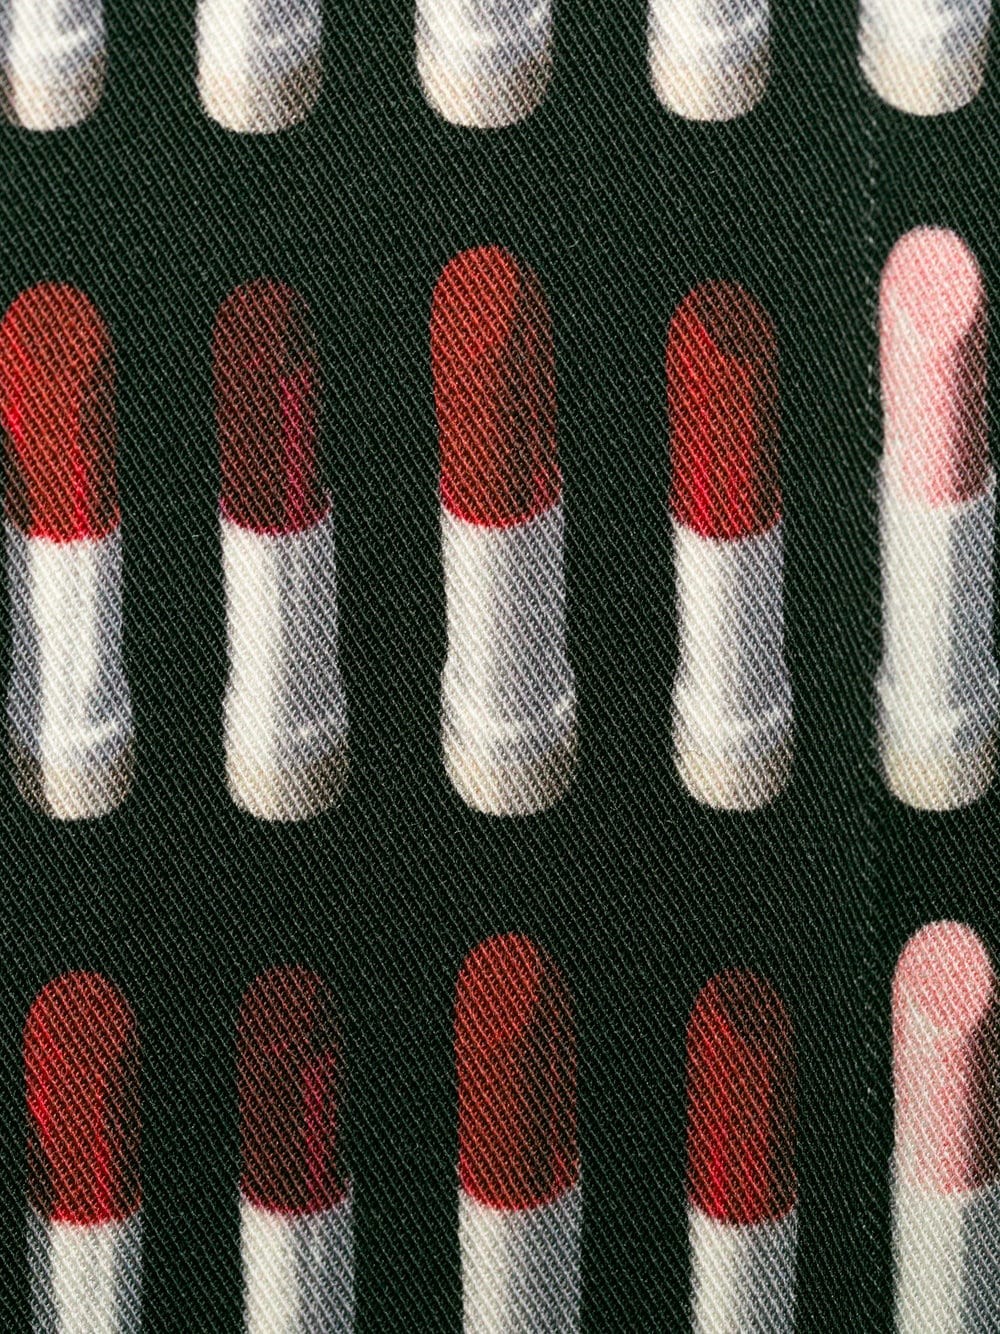 prada lipstick print